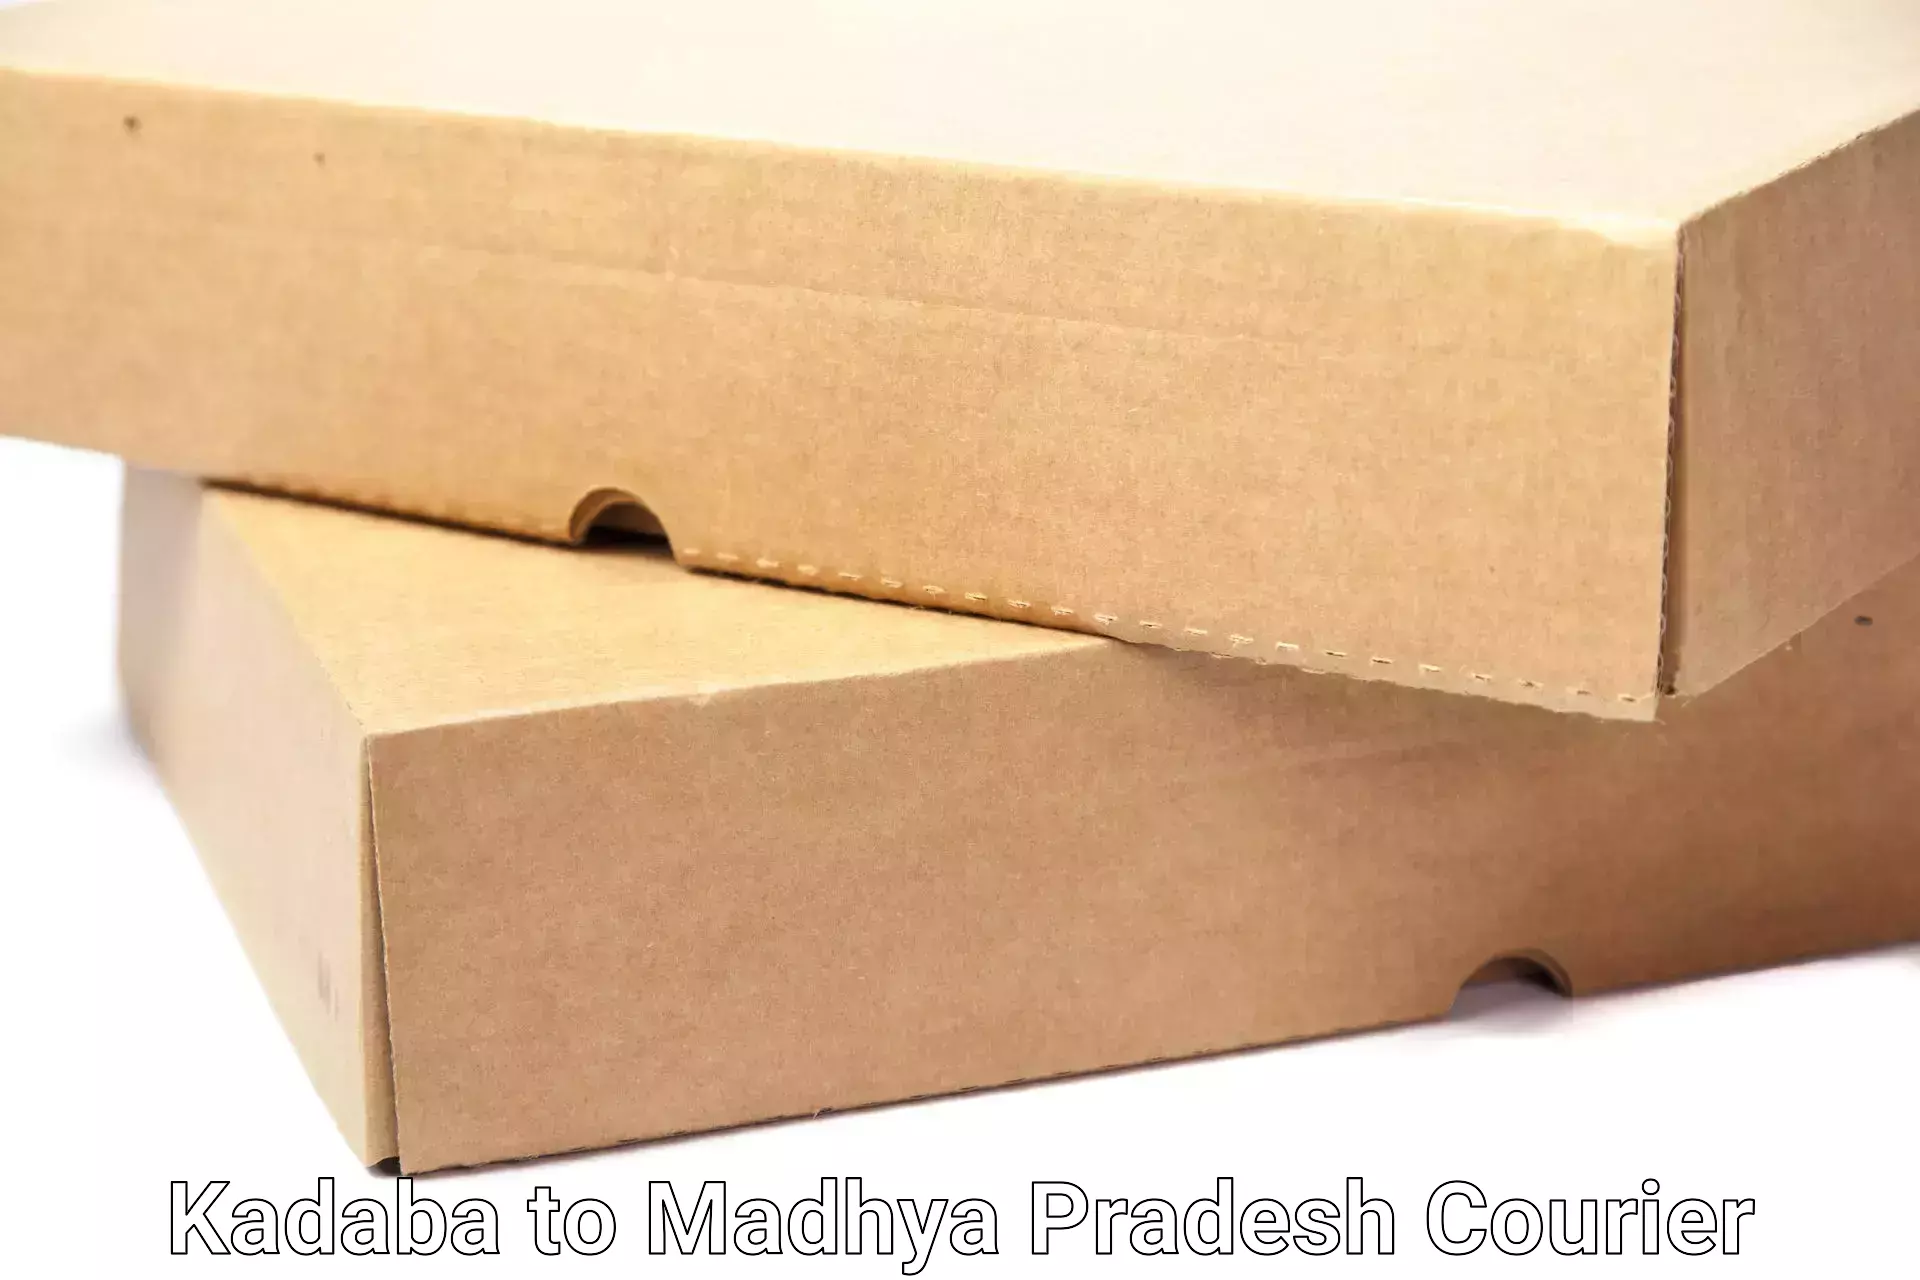 Efficient moving company Kadaba to Shivpuri